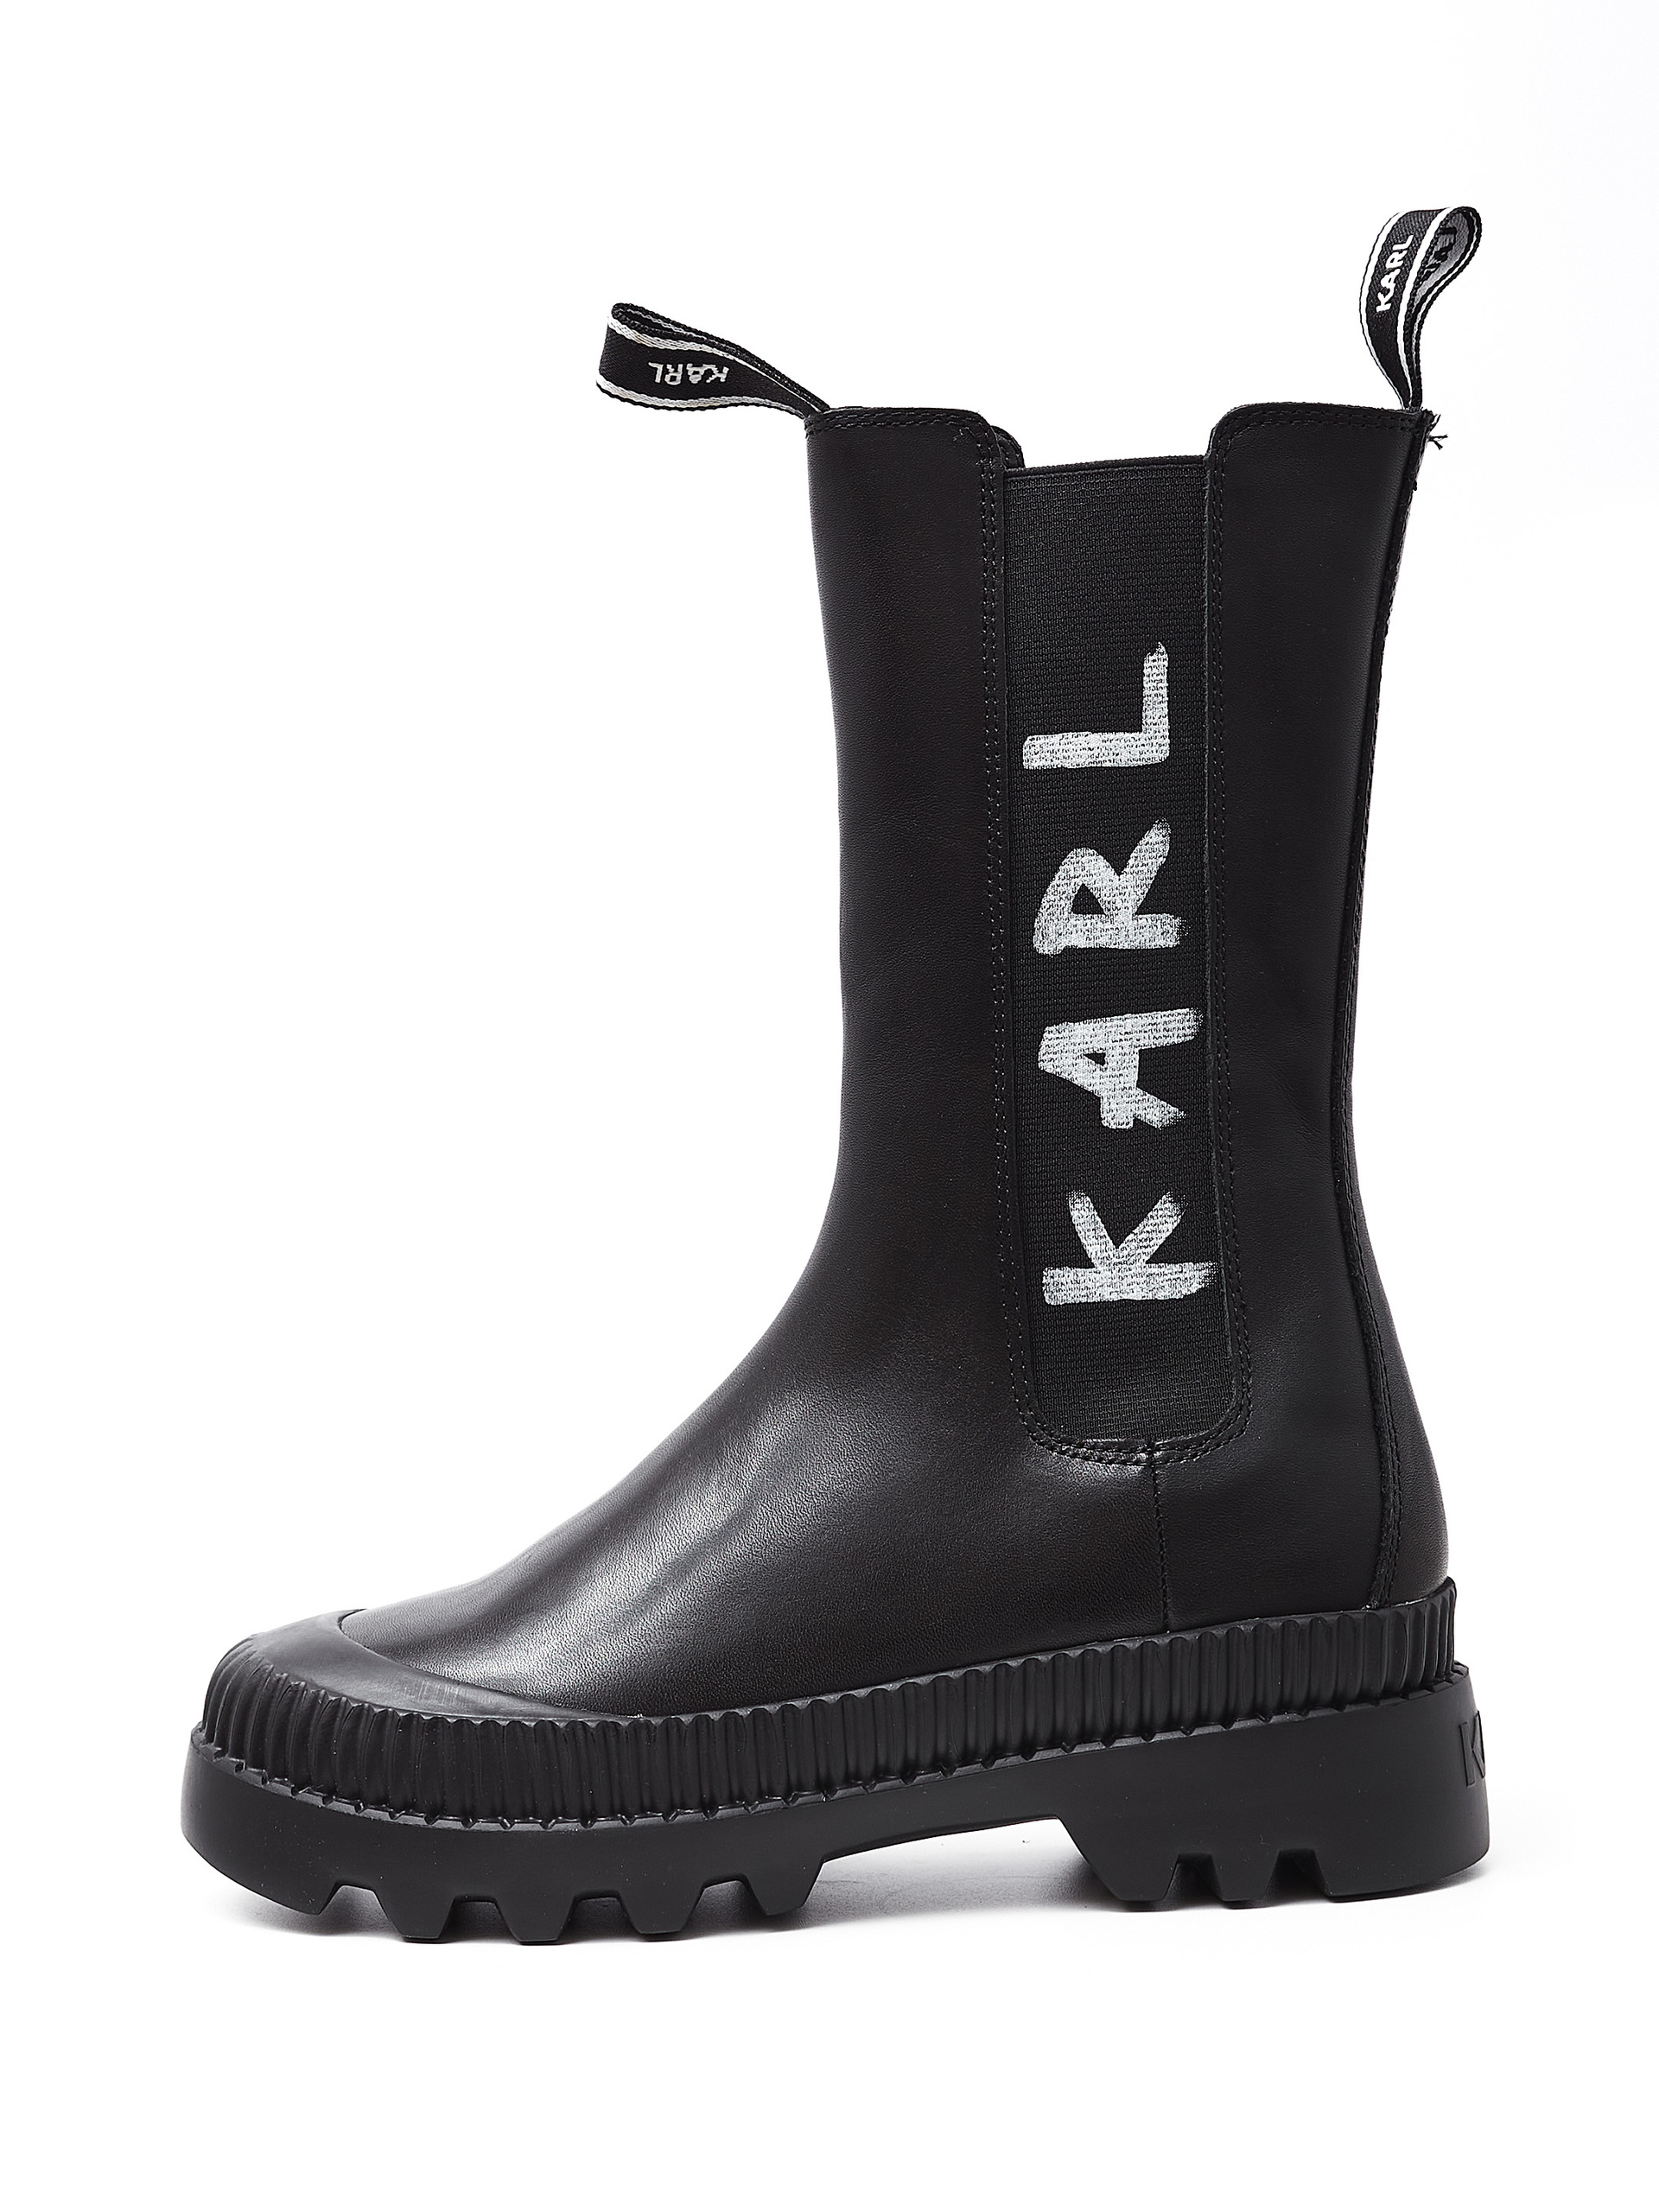 Ботинки Байкер Karl Lagerfeld купить за 19950 руб — доставка